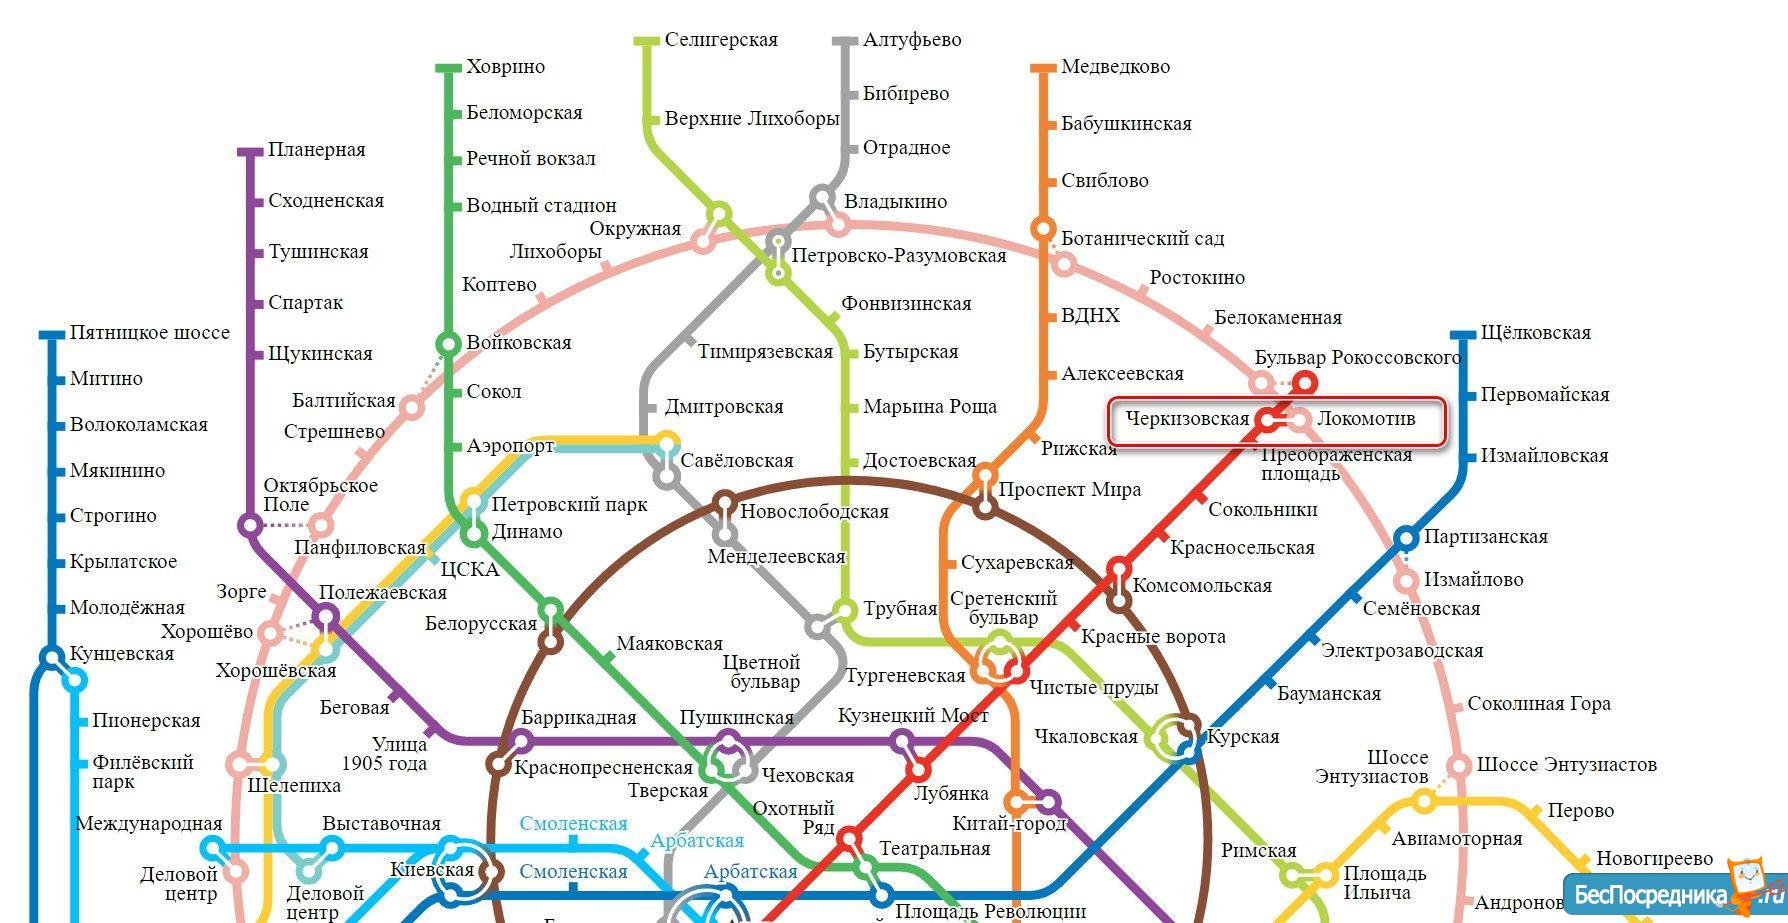 Карта метро черкизовская